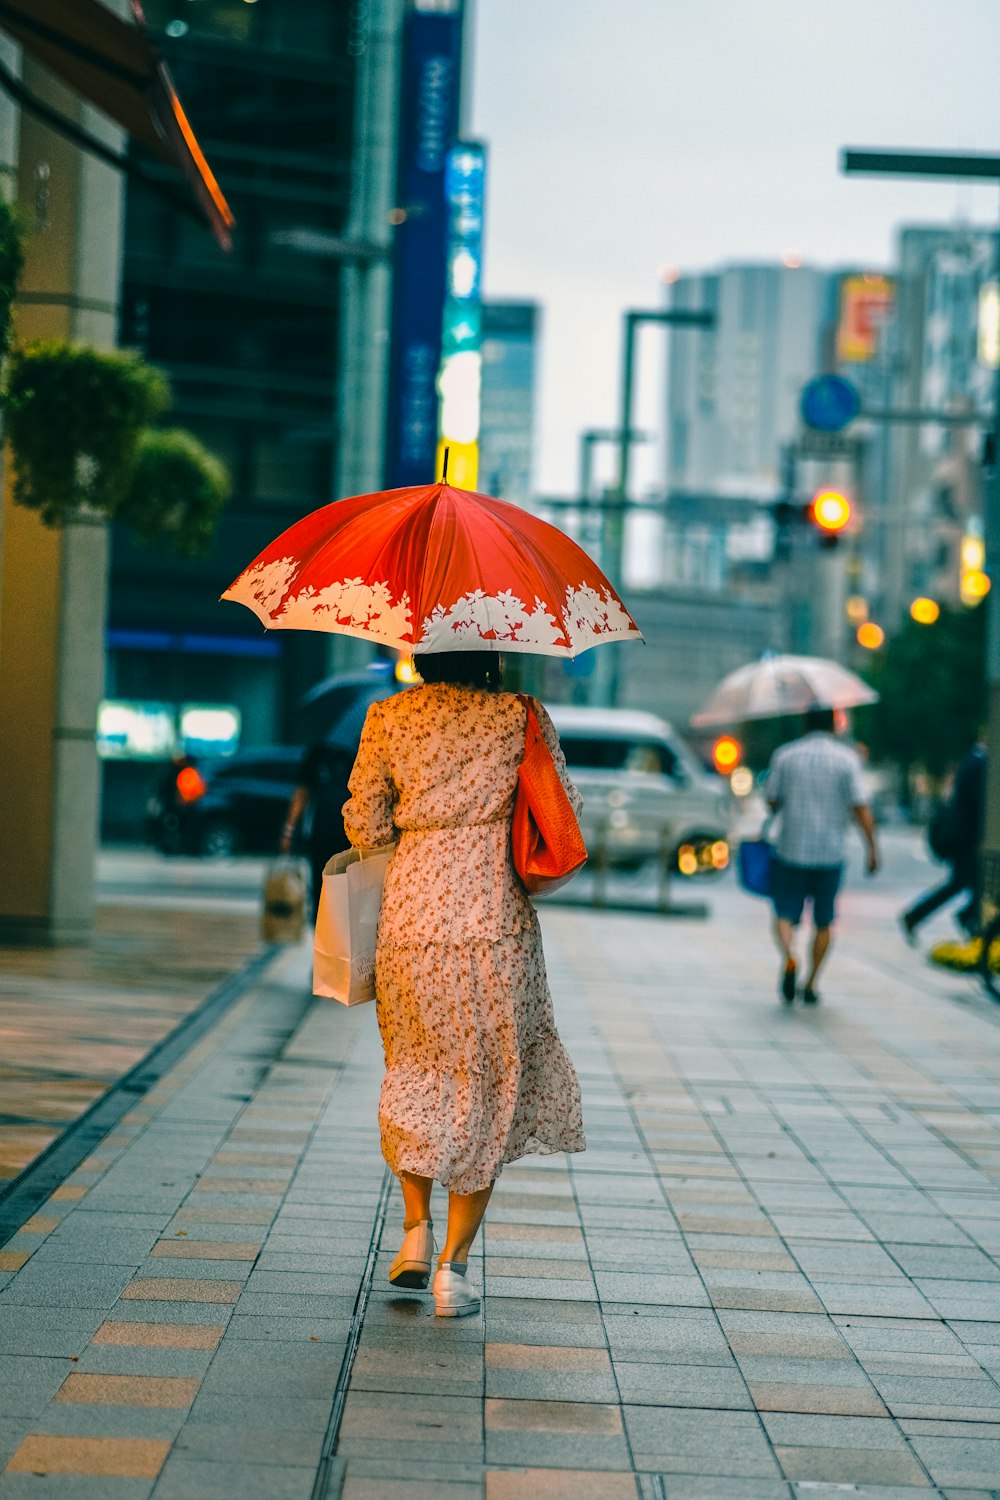 Una donna che cammina lungo una strada con un ombrello